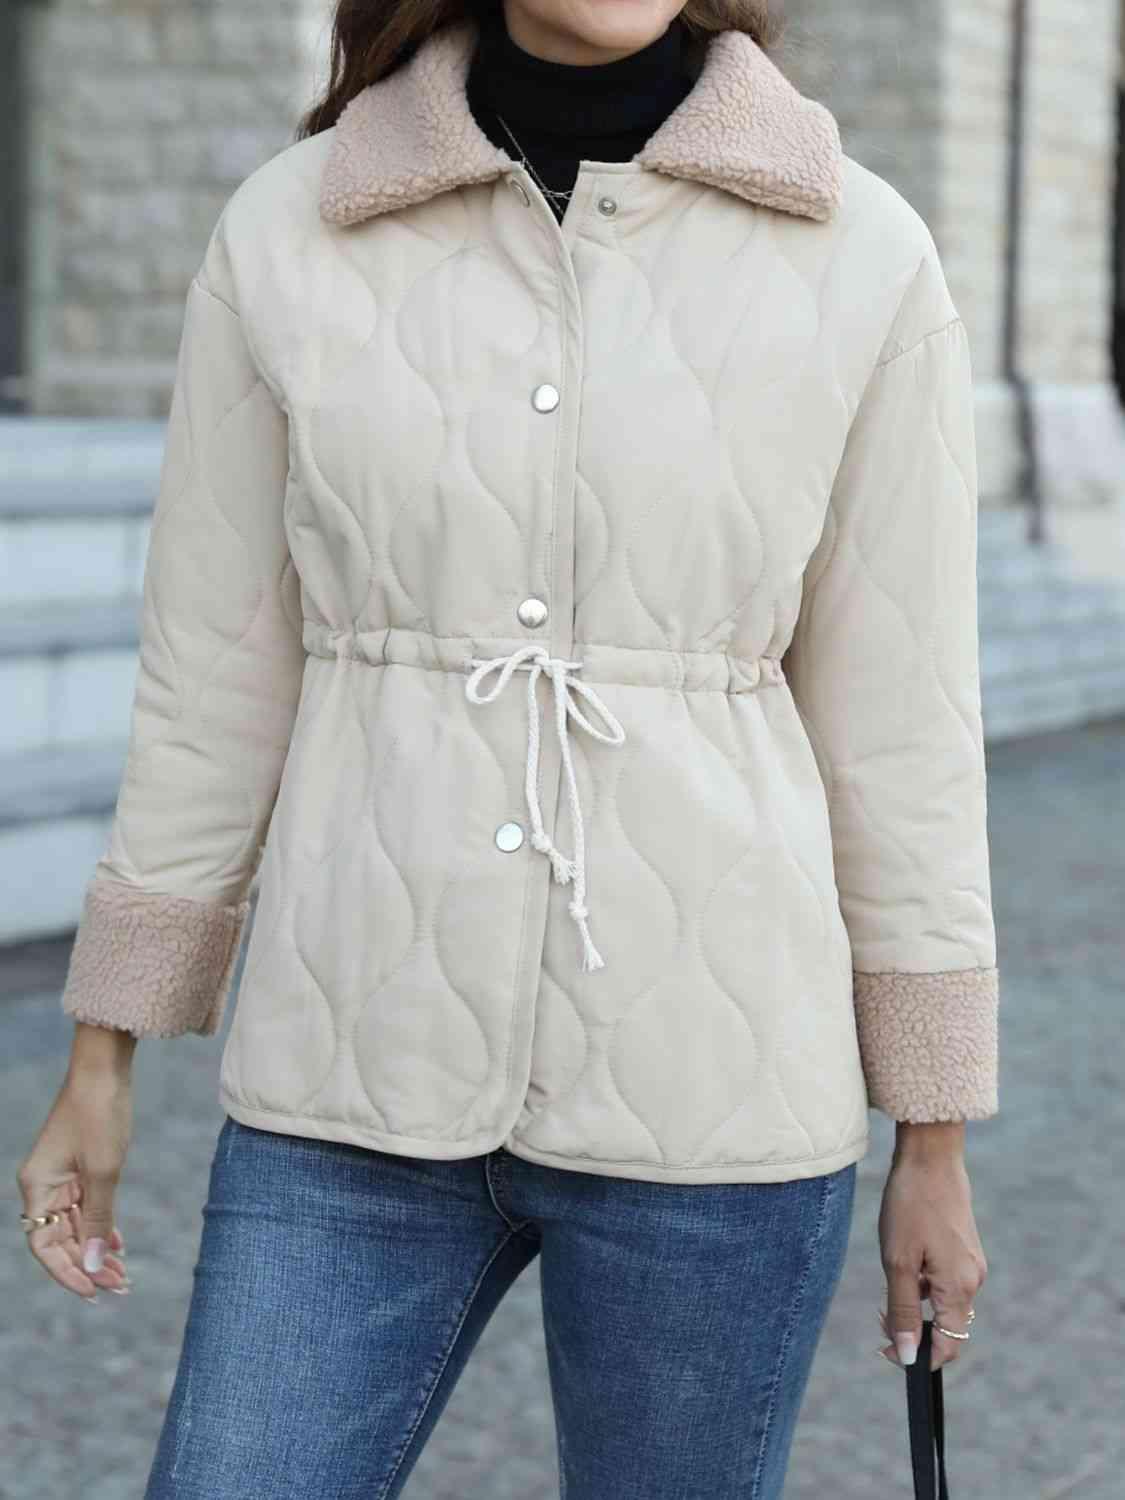 Winter Snug Snap Down Fleece Lined Jacket - MXSTUDIO.COM